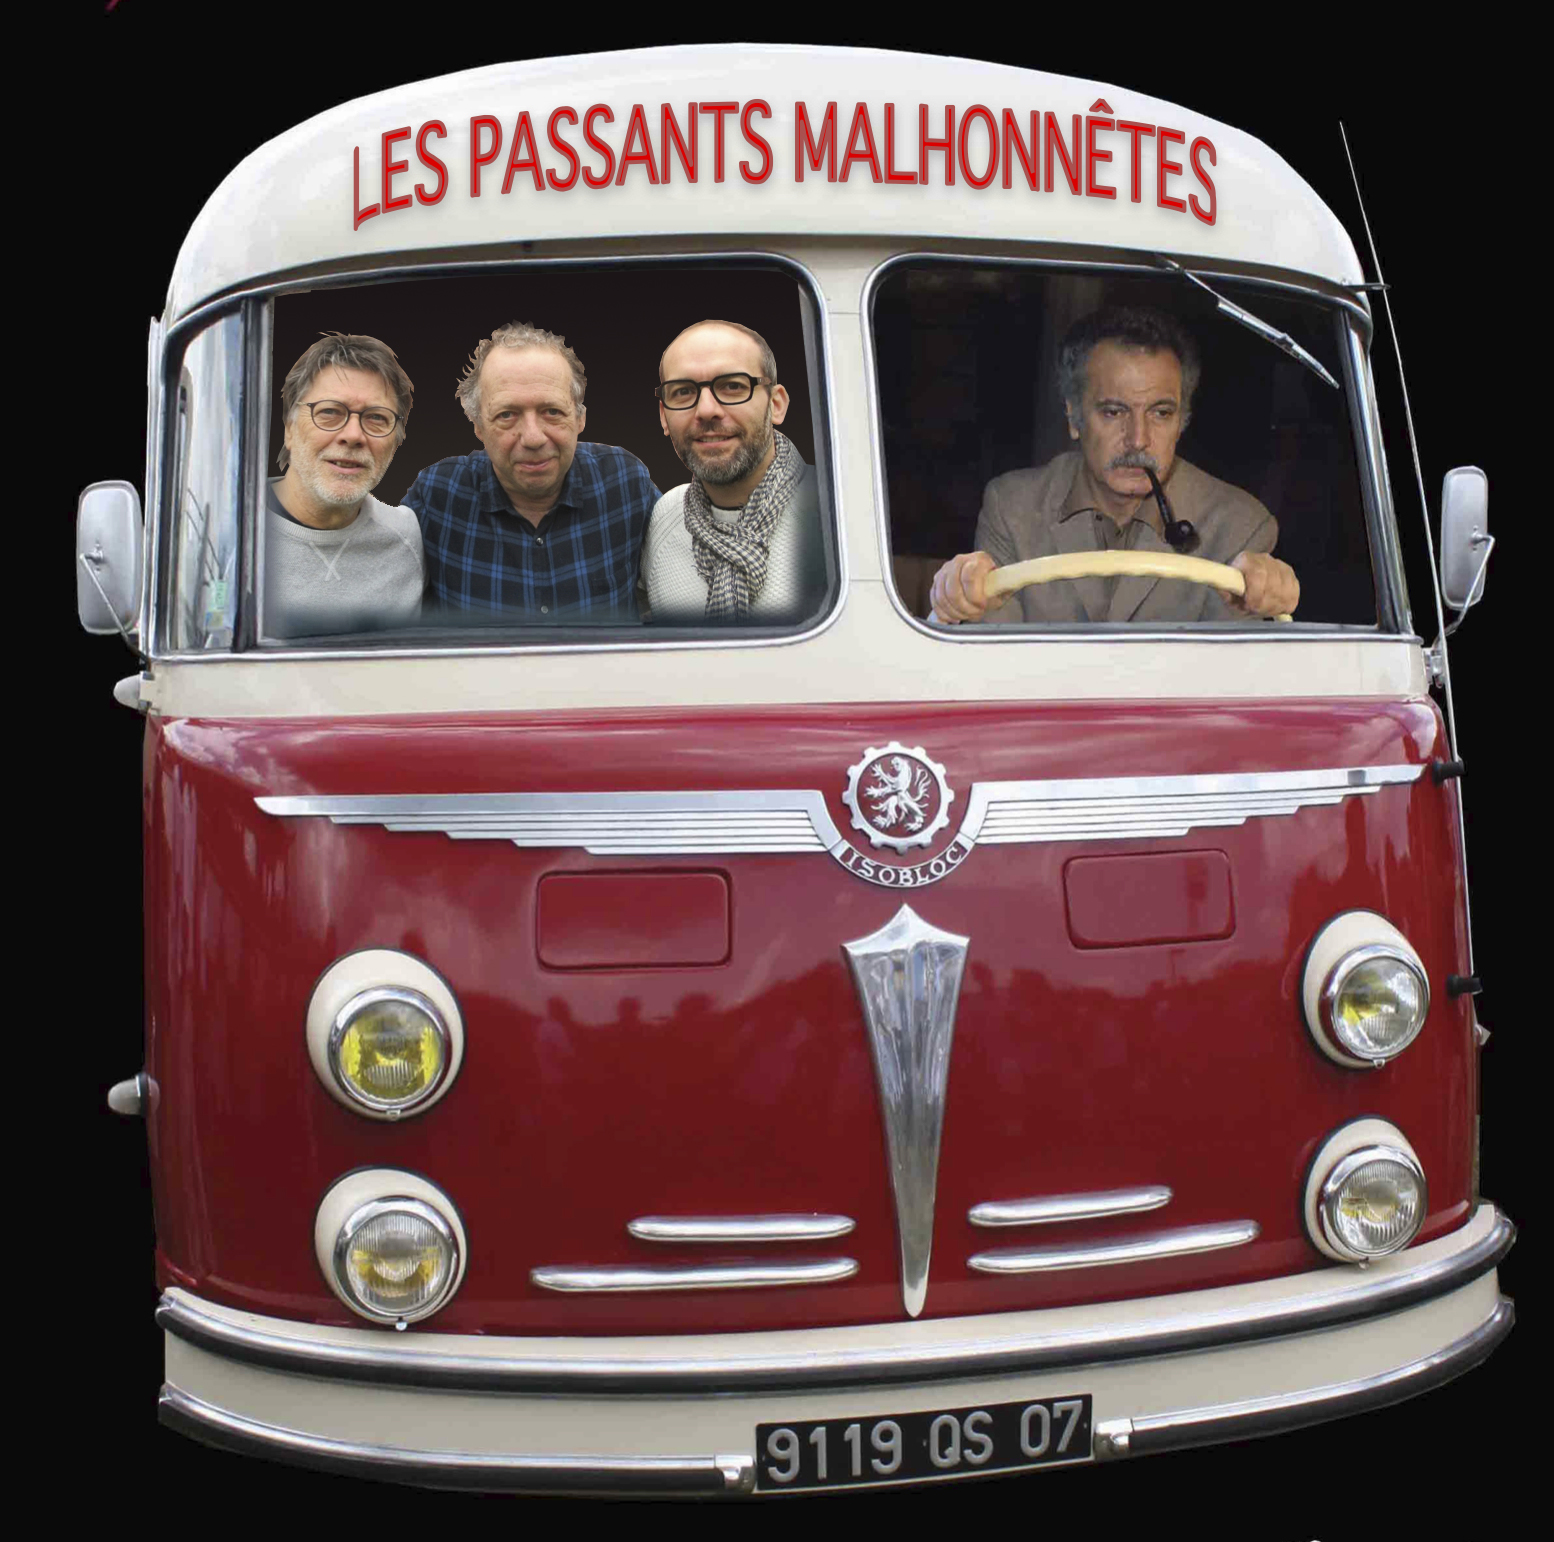 Passants malhonettes car Brassens 2